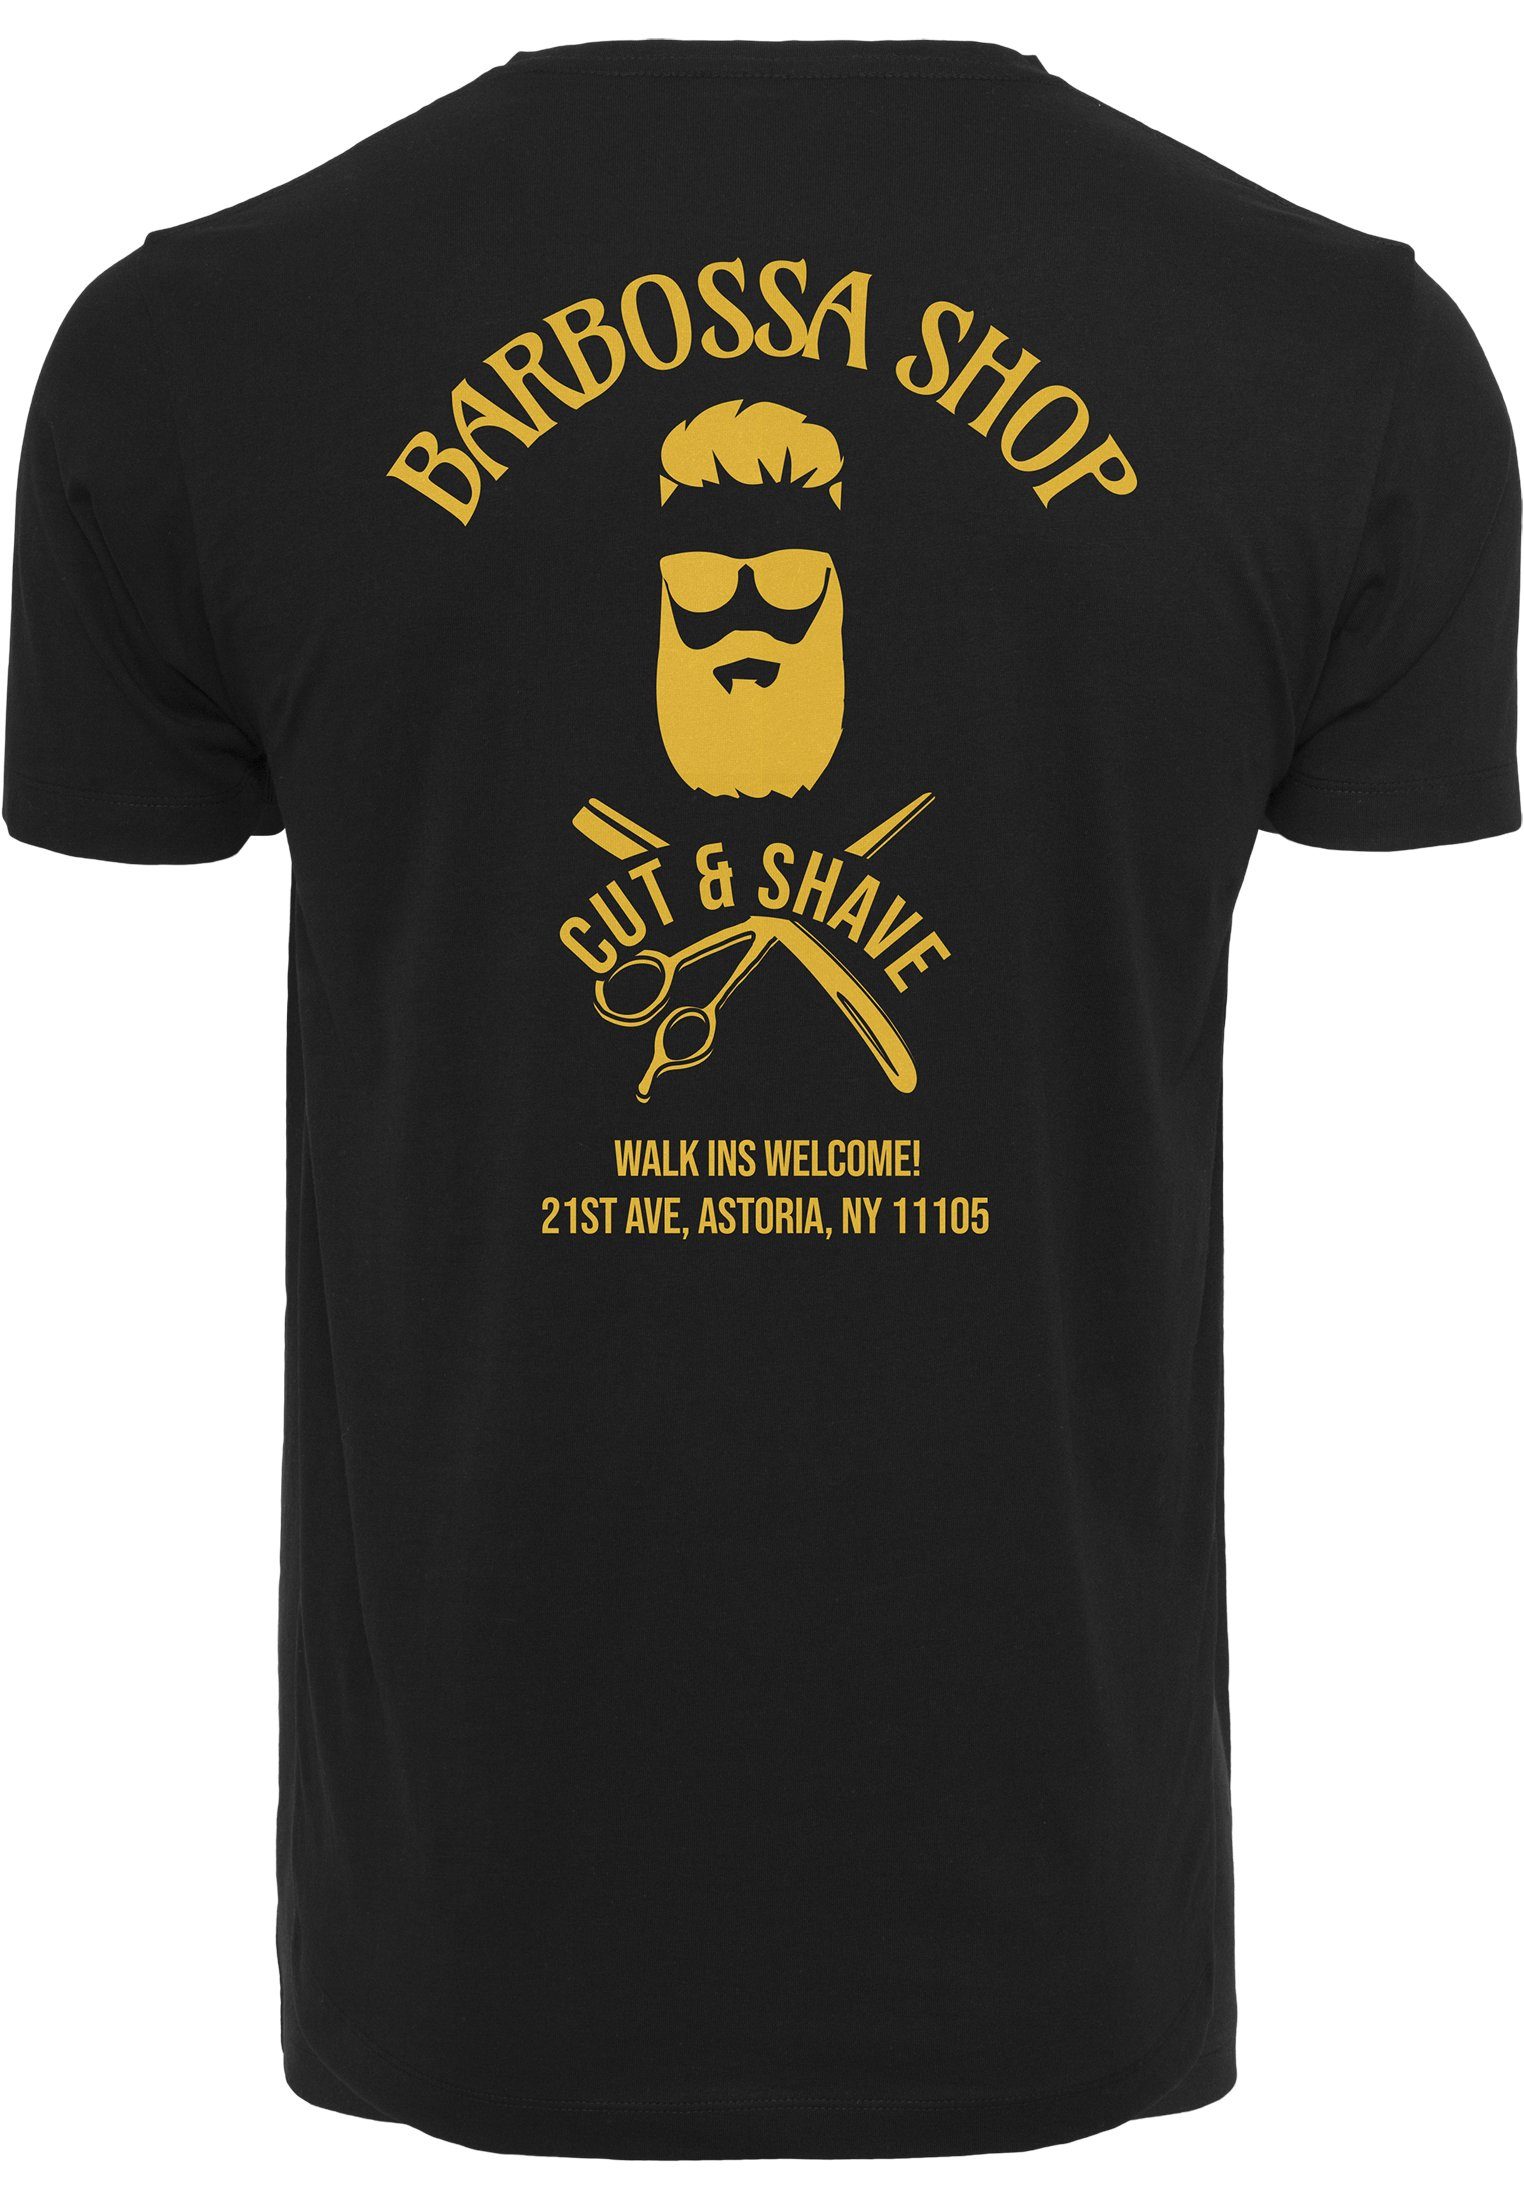 MisterTee T-Shirt Herren (1-tlg) Tee Barbossa MT878 black Barbossa